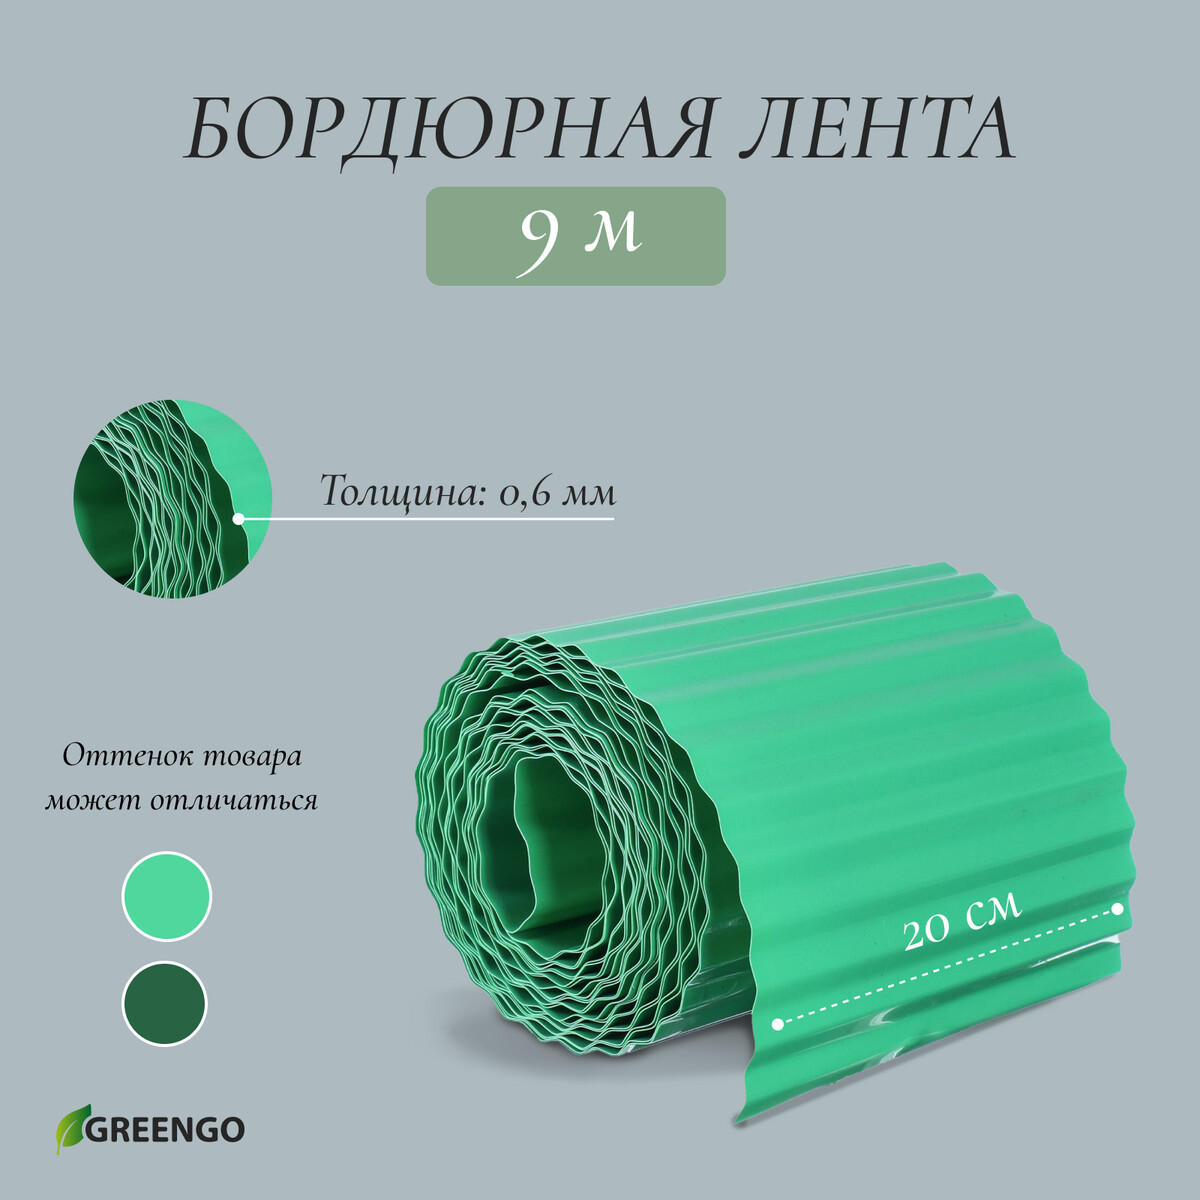 Лента бордюрная, 0.2 × 9 м, толщина 0.6 мм, пластиковая, гофра, зеленая, greengo